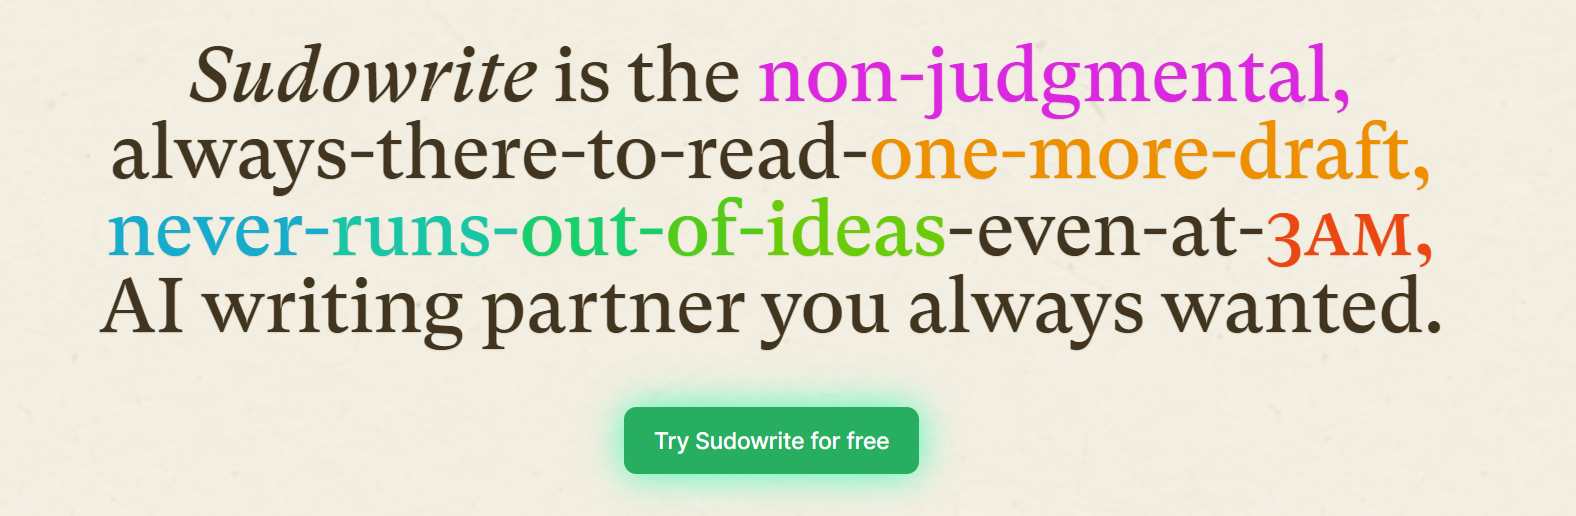  sudowrite-homepage sudowrite-homepage è la pagina principale di Sudowrite. 